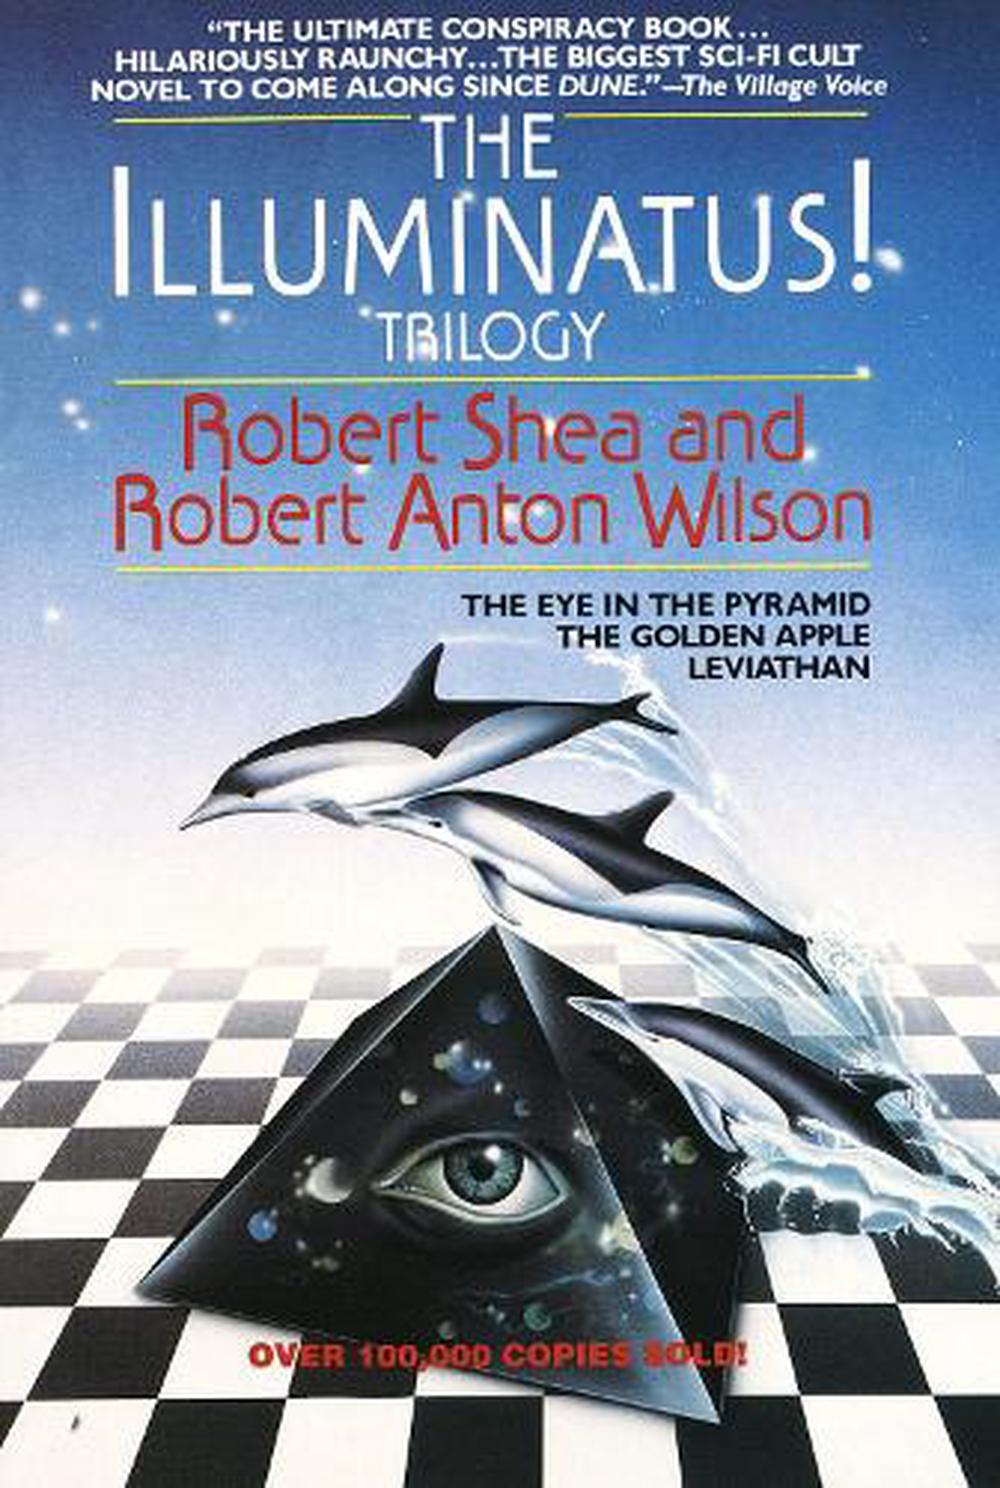 the illuminatus trilogy goodreads